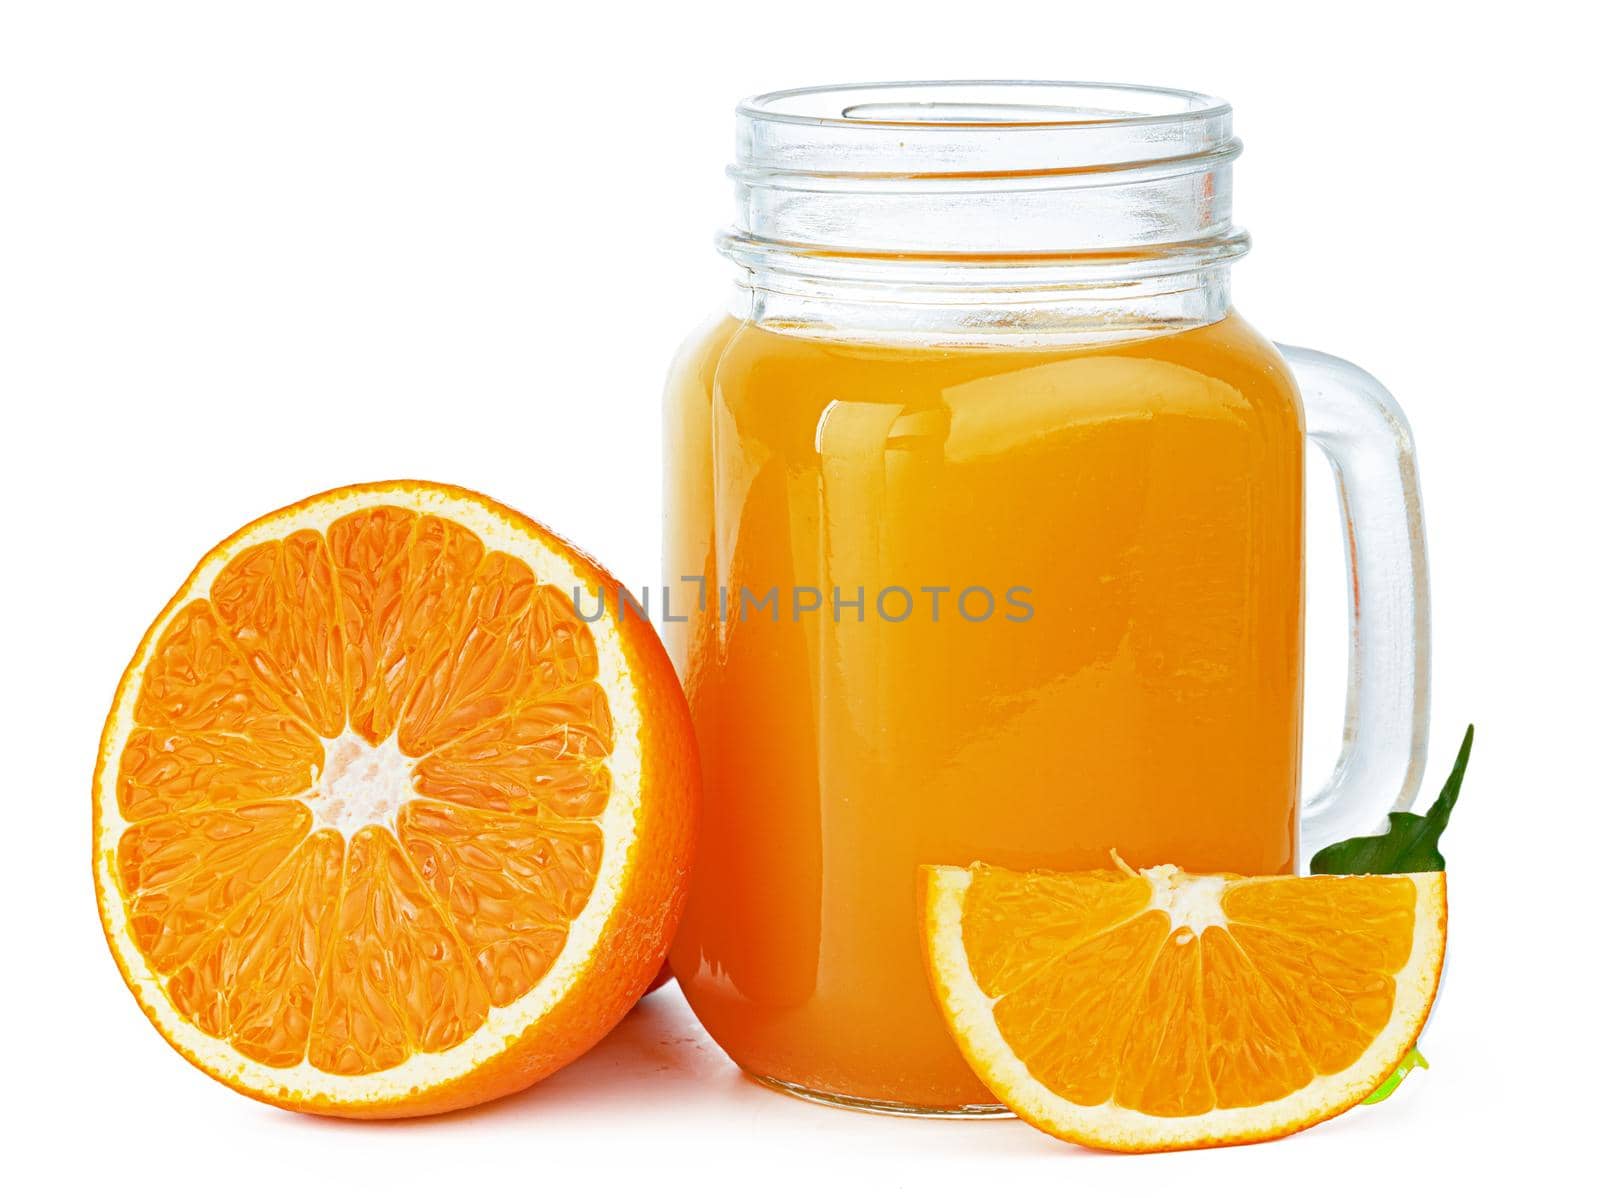 Glass of orange juice isolated on white by Fabrikasimf